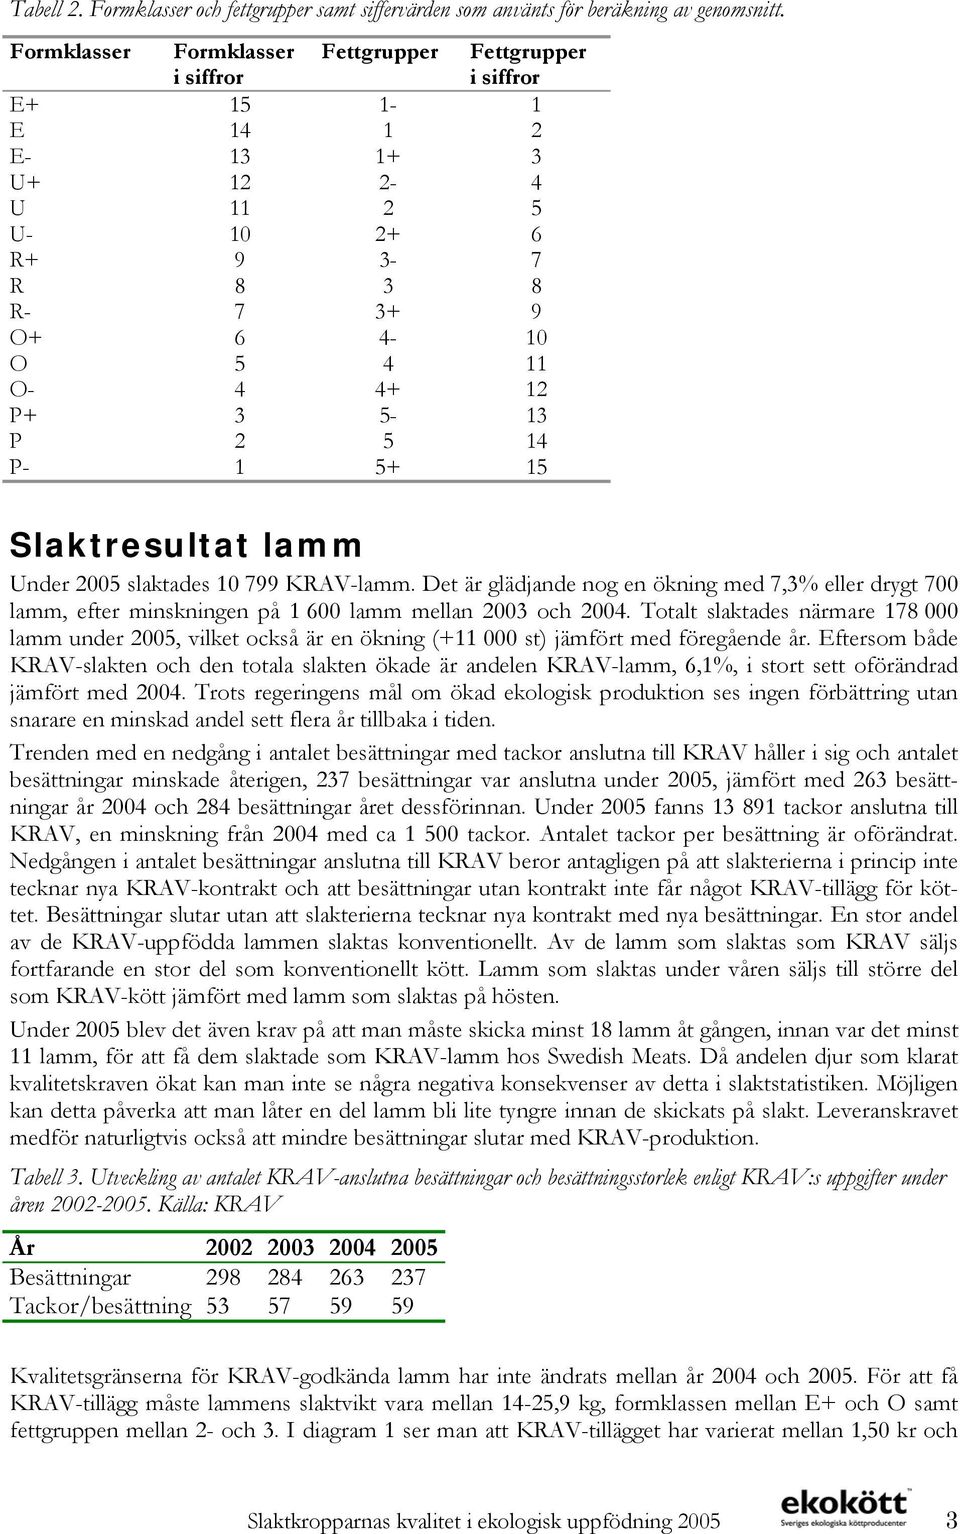 5 14 P- 1 5+ 15 Slaktresultat lamm Under 2005 slaktades 10 799 KRAV-lamm. Det är glädjande nog en ökning med 7,3% eller drygt 700 lamm, efter minskningen på 1 600 lamm mellan 2003 och 2004.